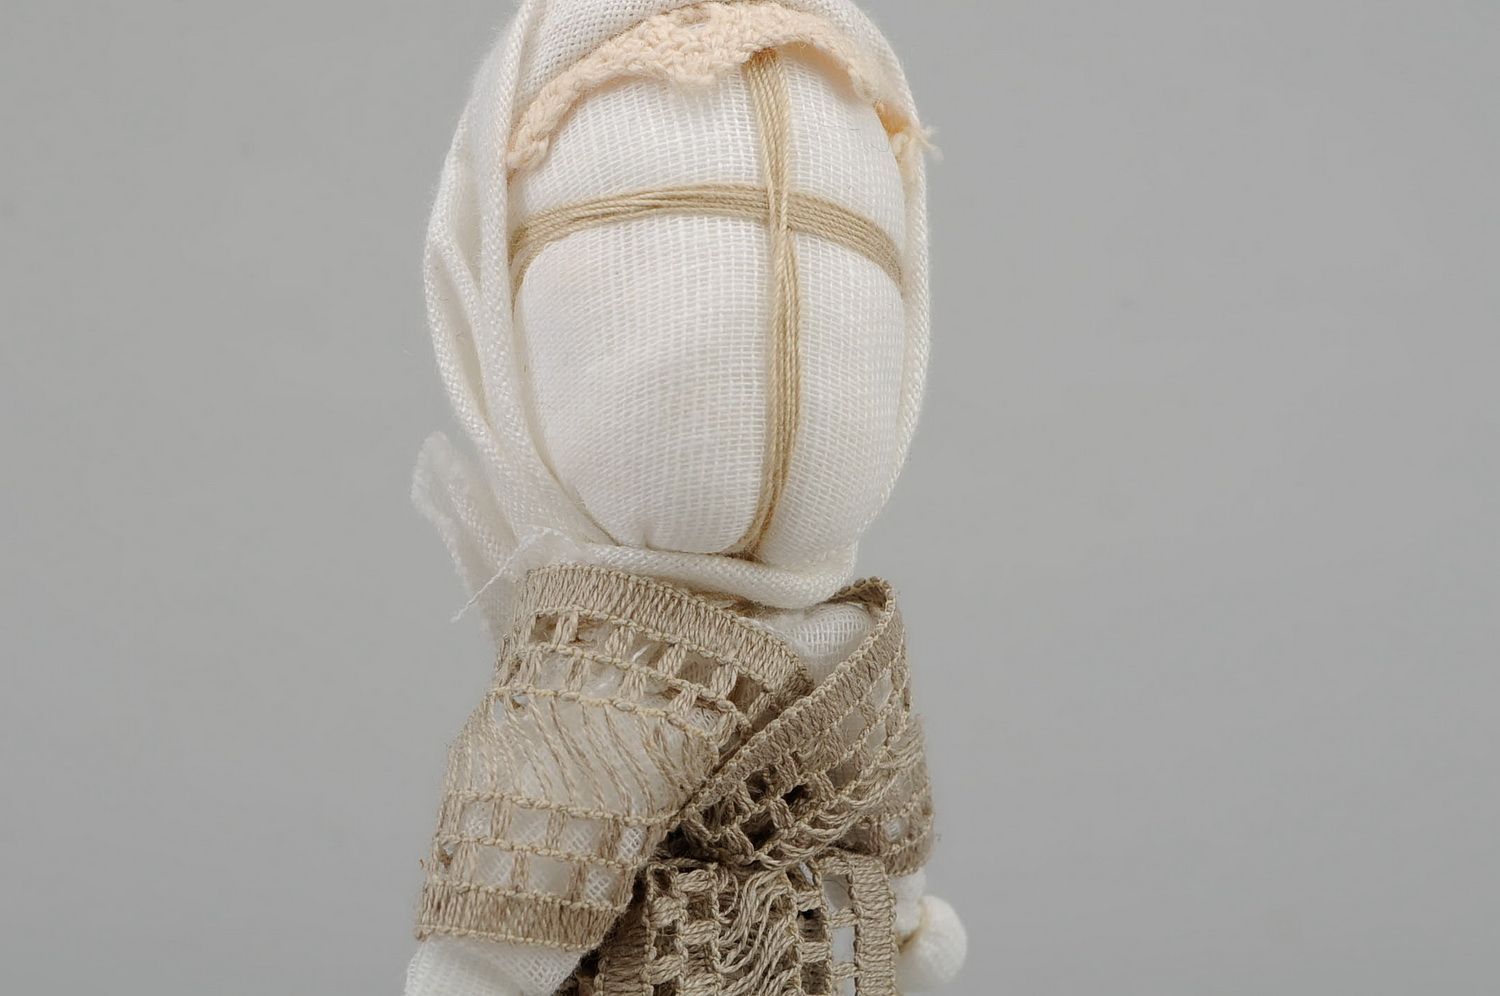 Bambola etnica di stoffa fatta a mano amuleto talismano giocattolo slavo  foto 5